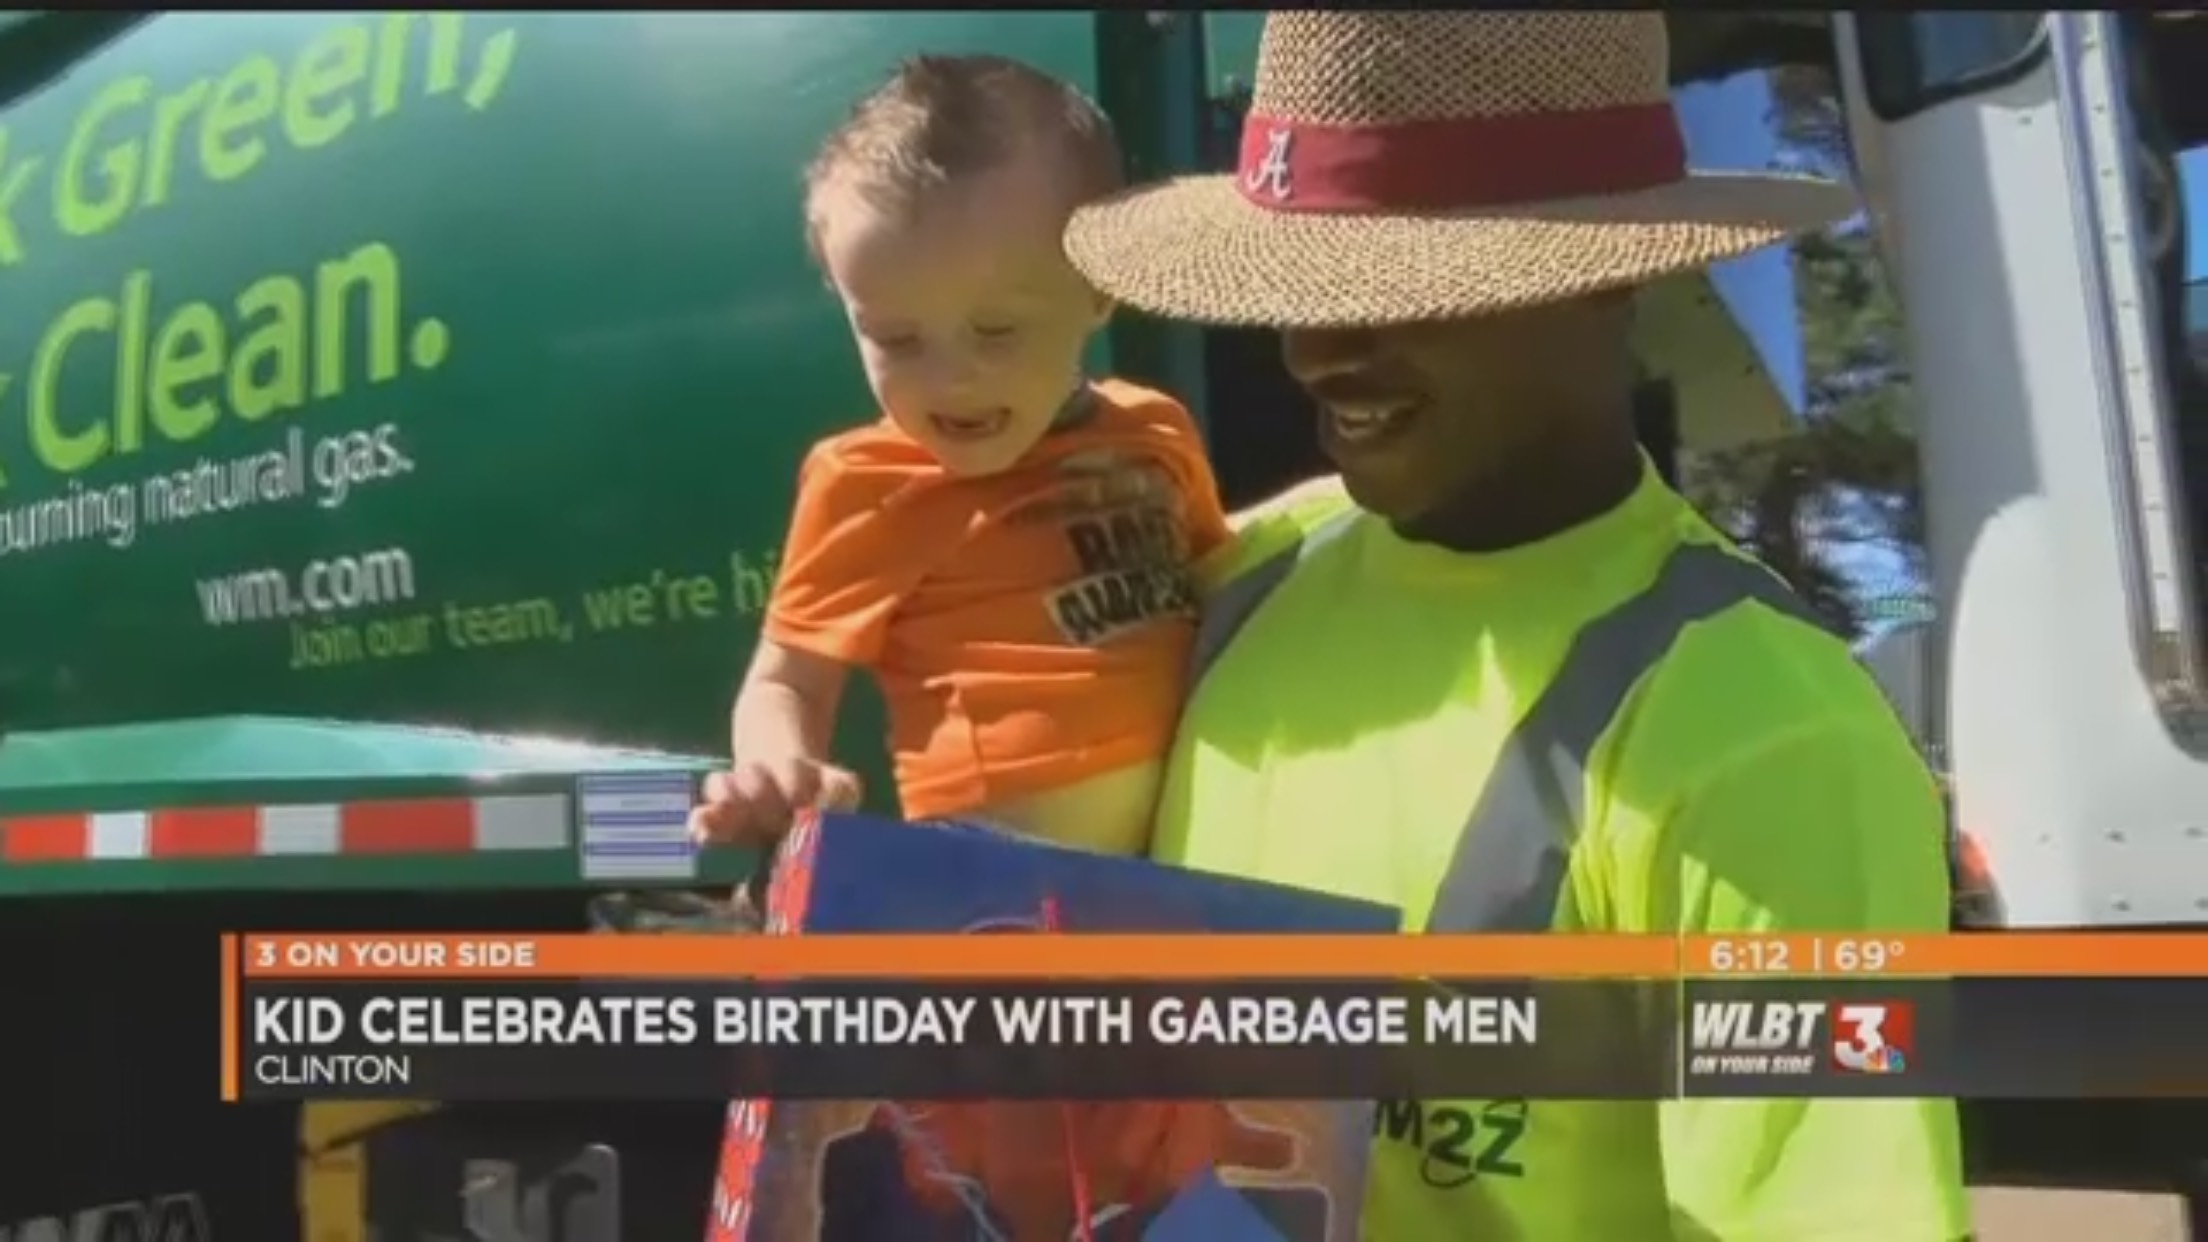 Chyron: "Kid Celebrates Birthday With Garbage Men"